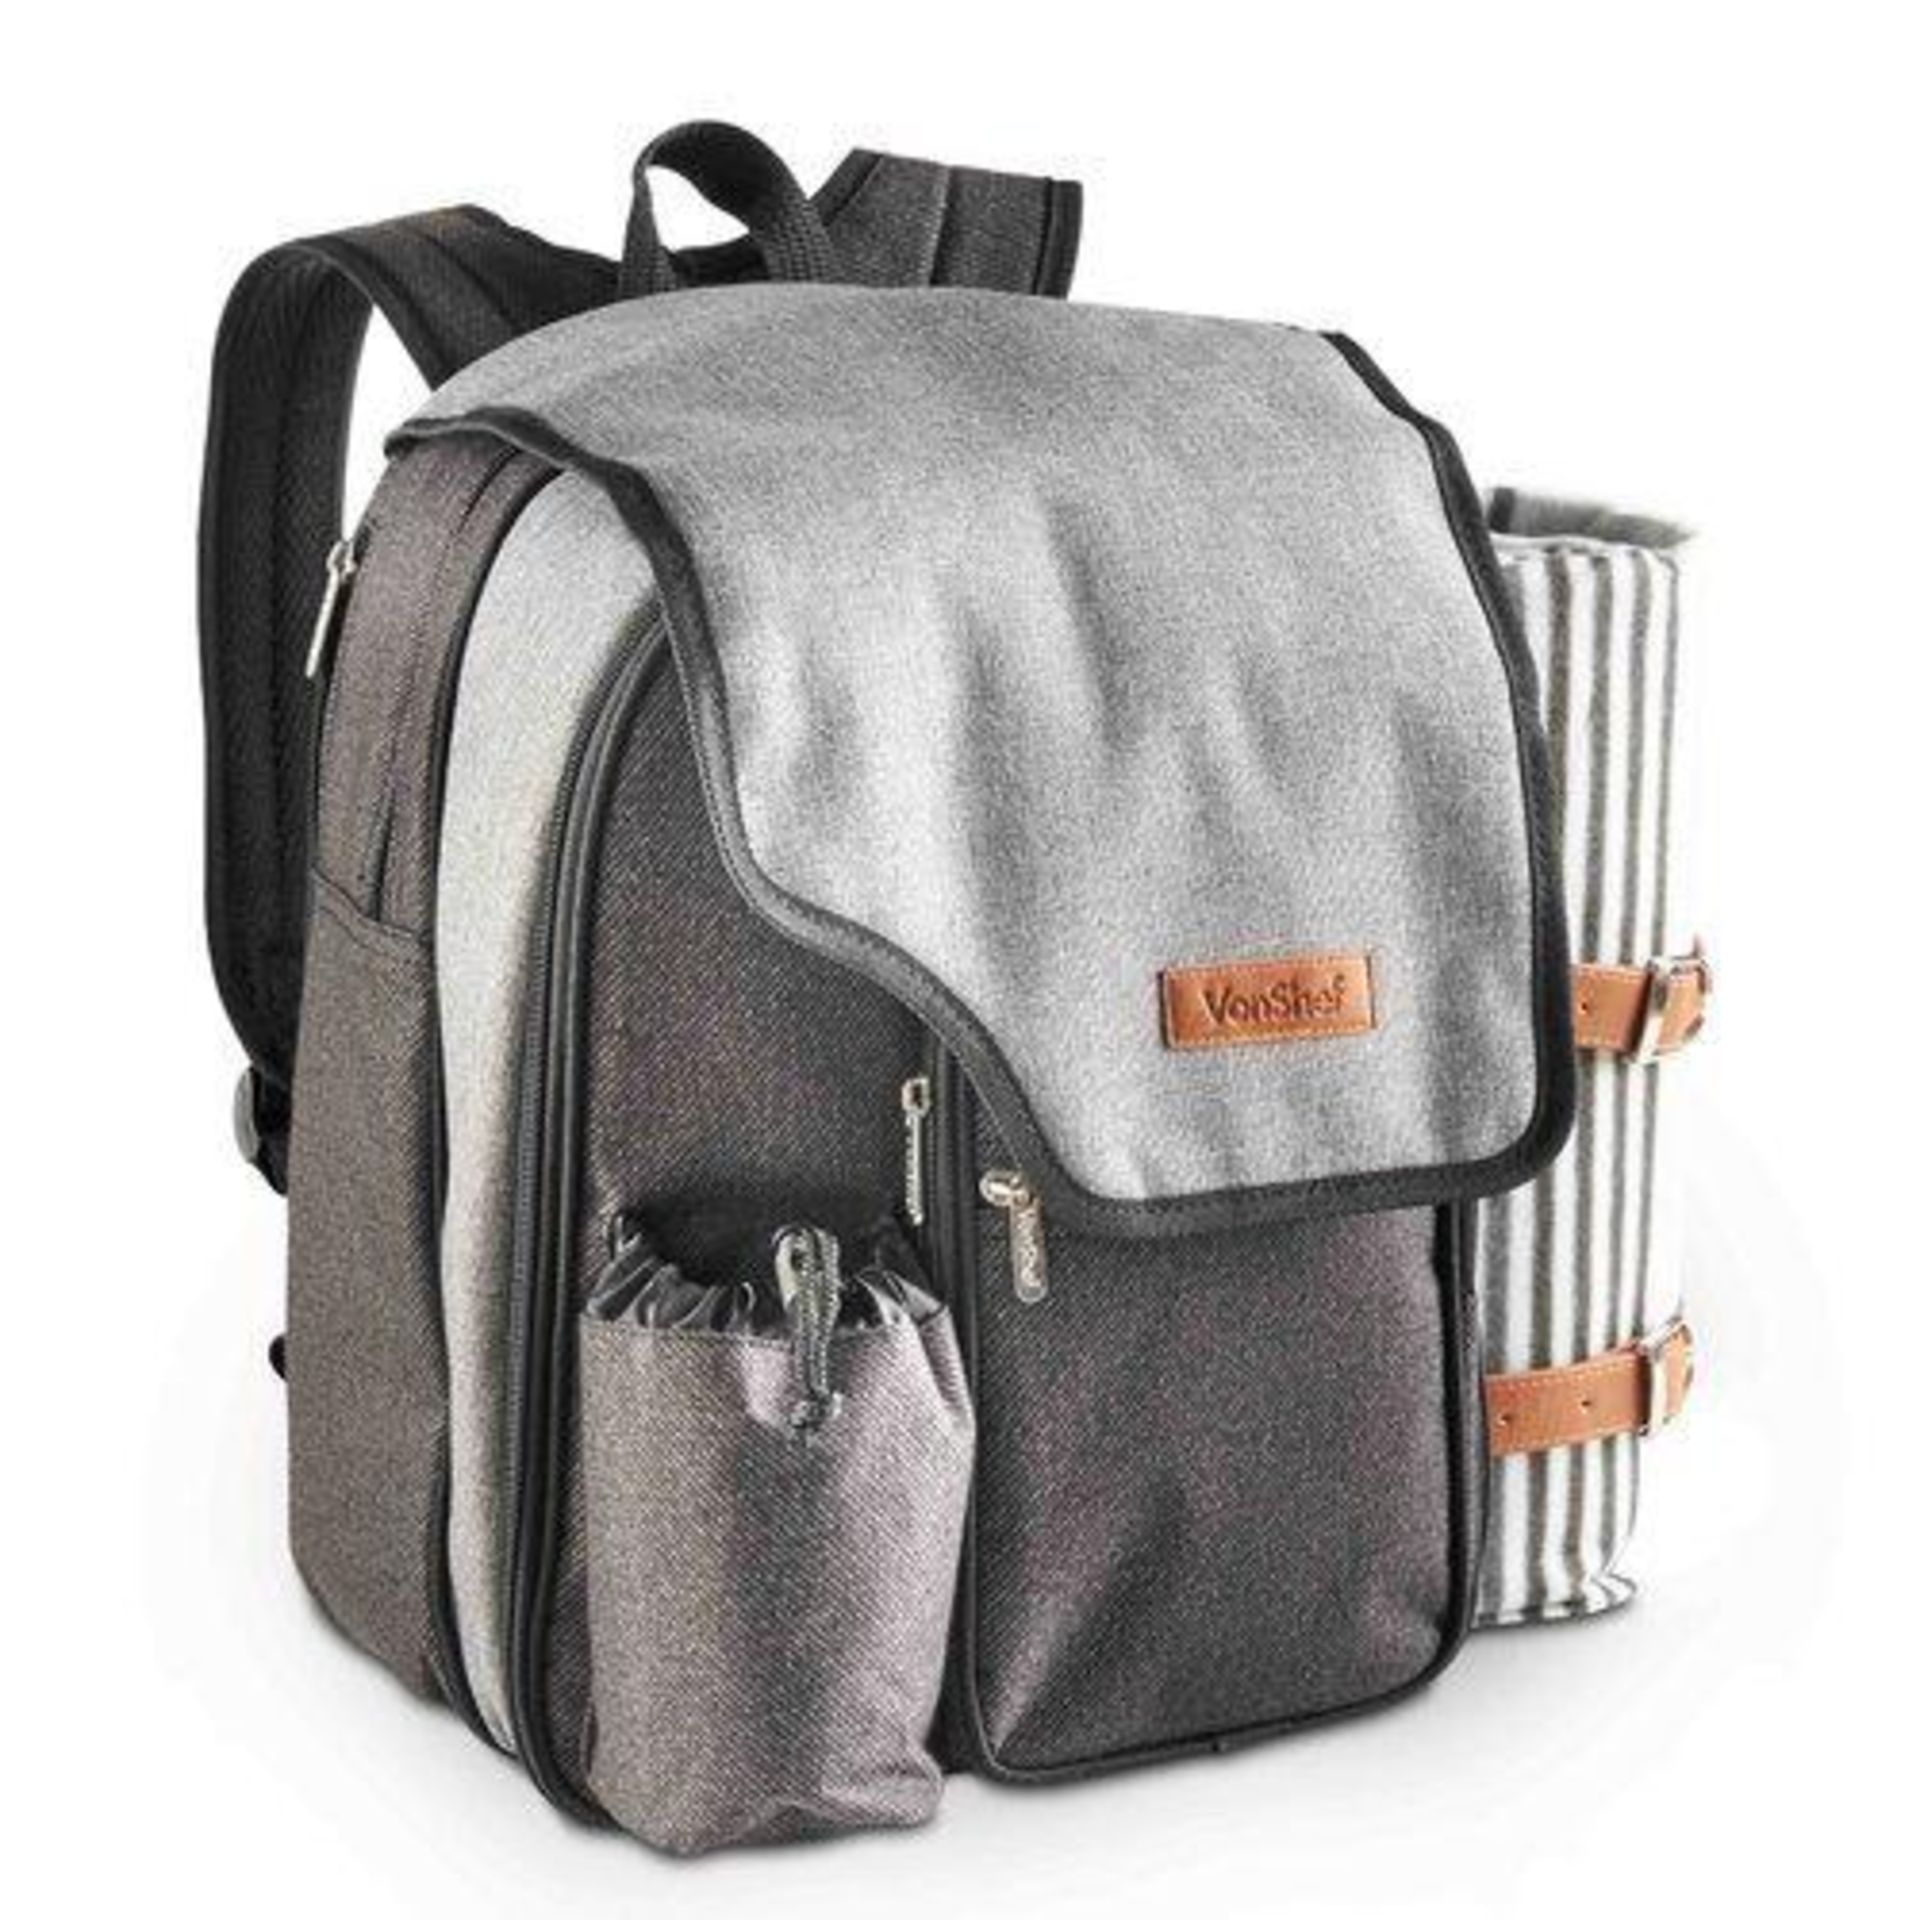 Ash Picnic Backpack for 2 - ER51.